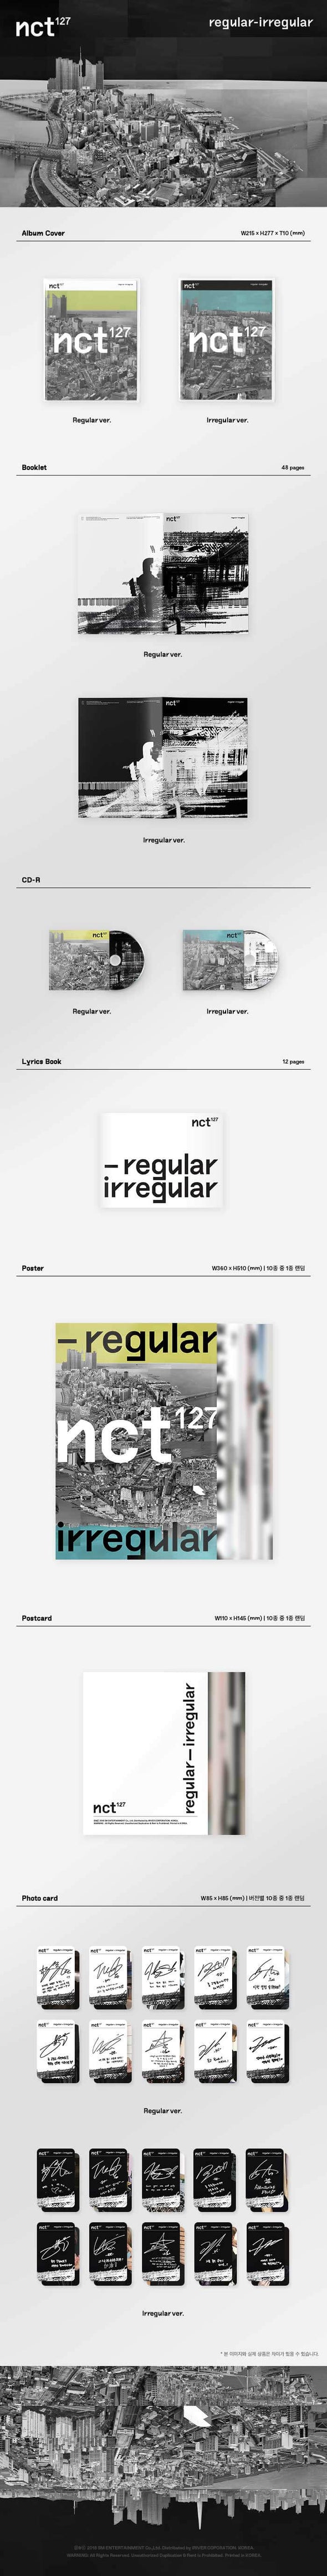 NCT127 - 1st Full Album (Random Version)